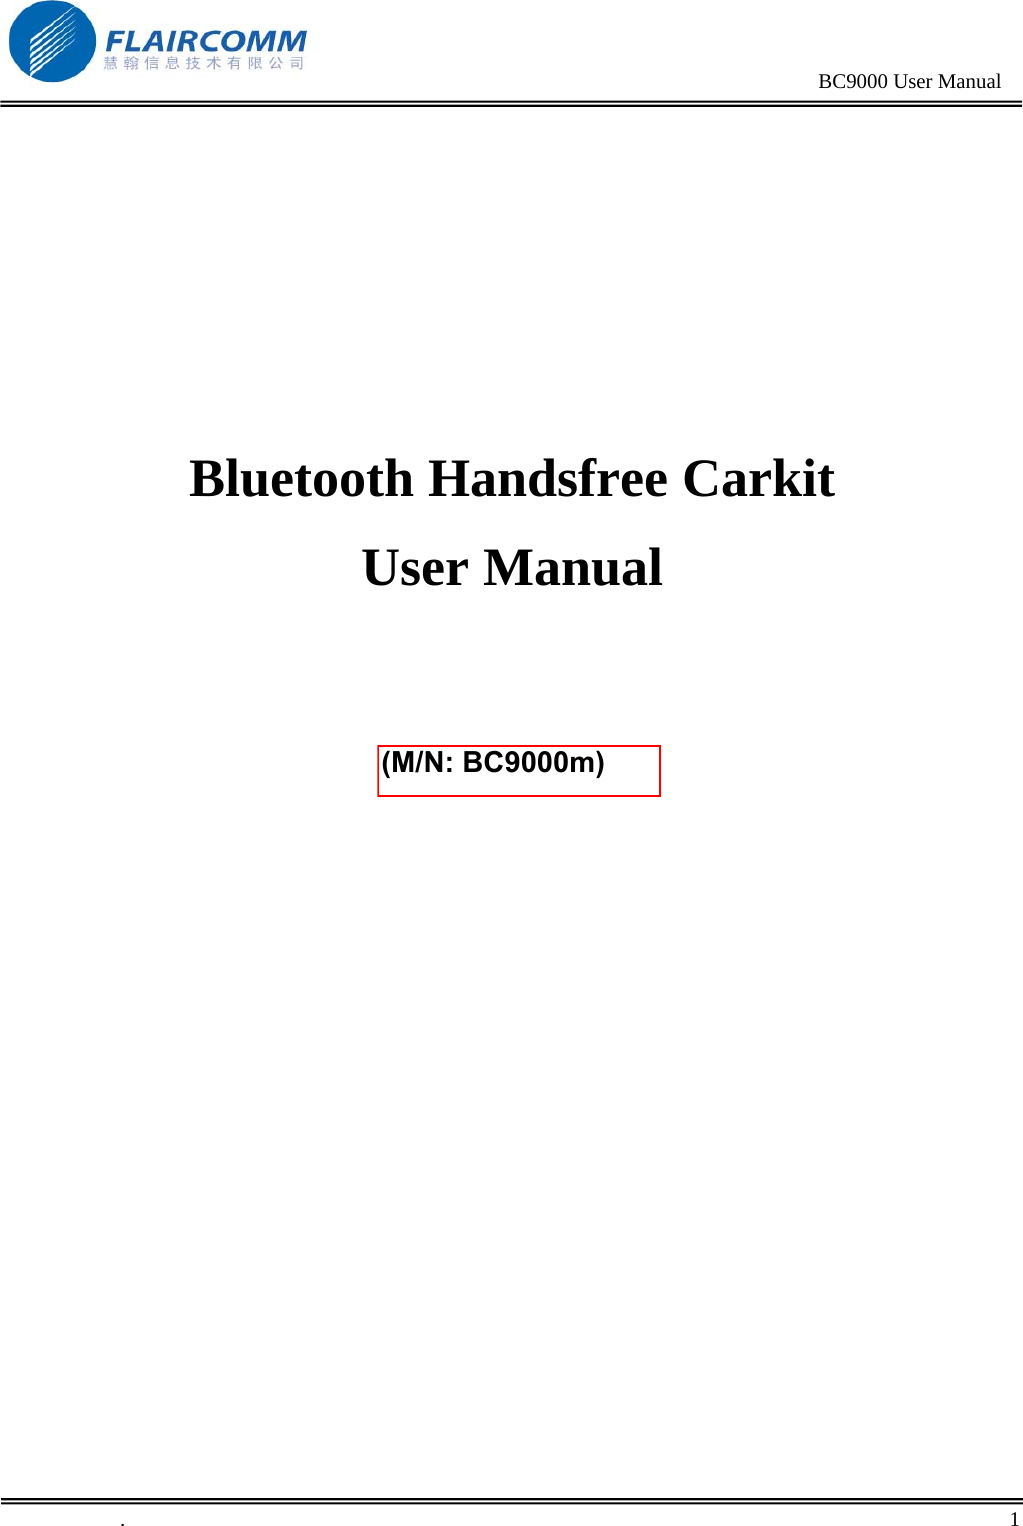                                                                                                BC9000 User Manual      Bluetooth Handsfree Carkit User Manual     Model： BC9000                .       1    (M/N: BC9000m) 